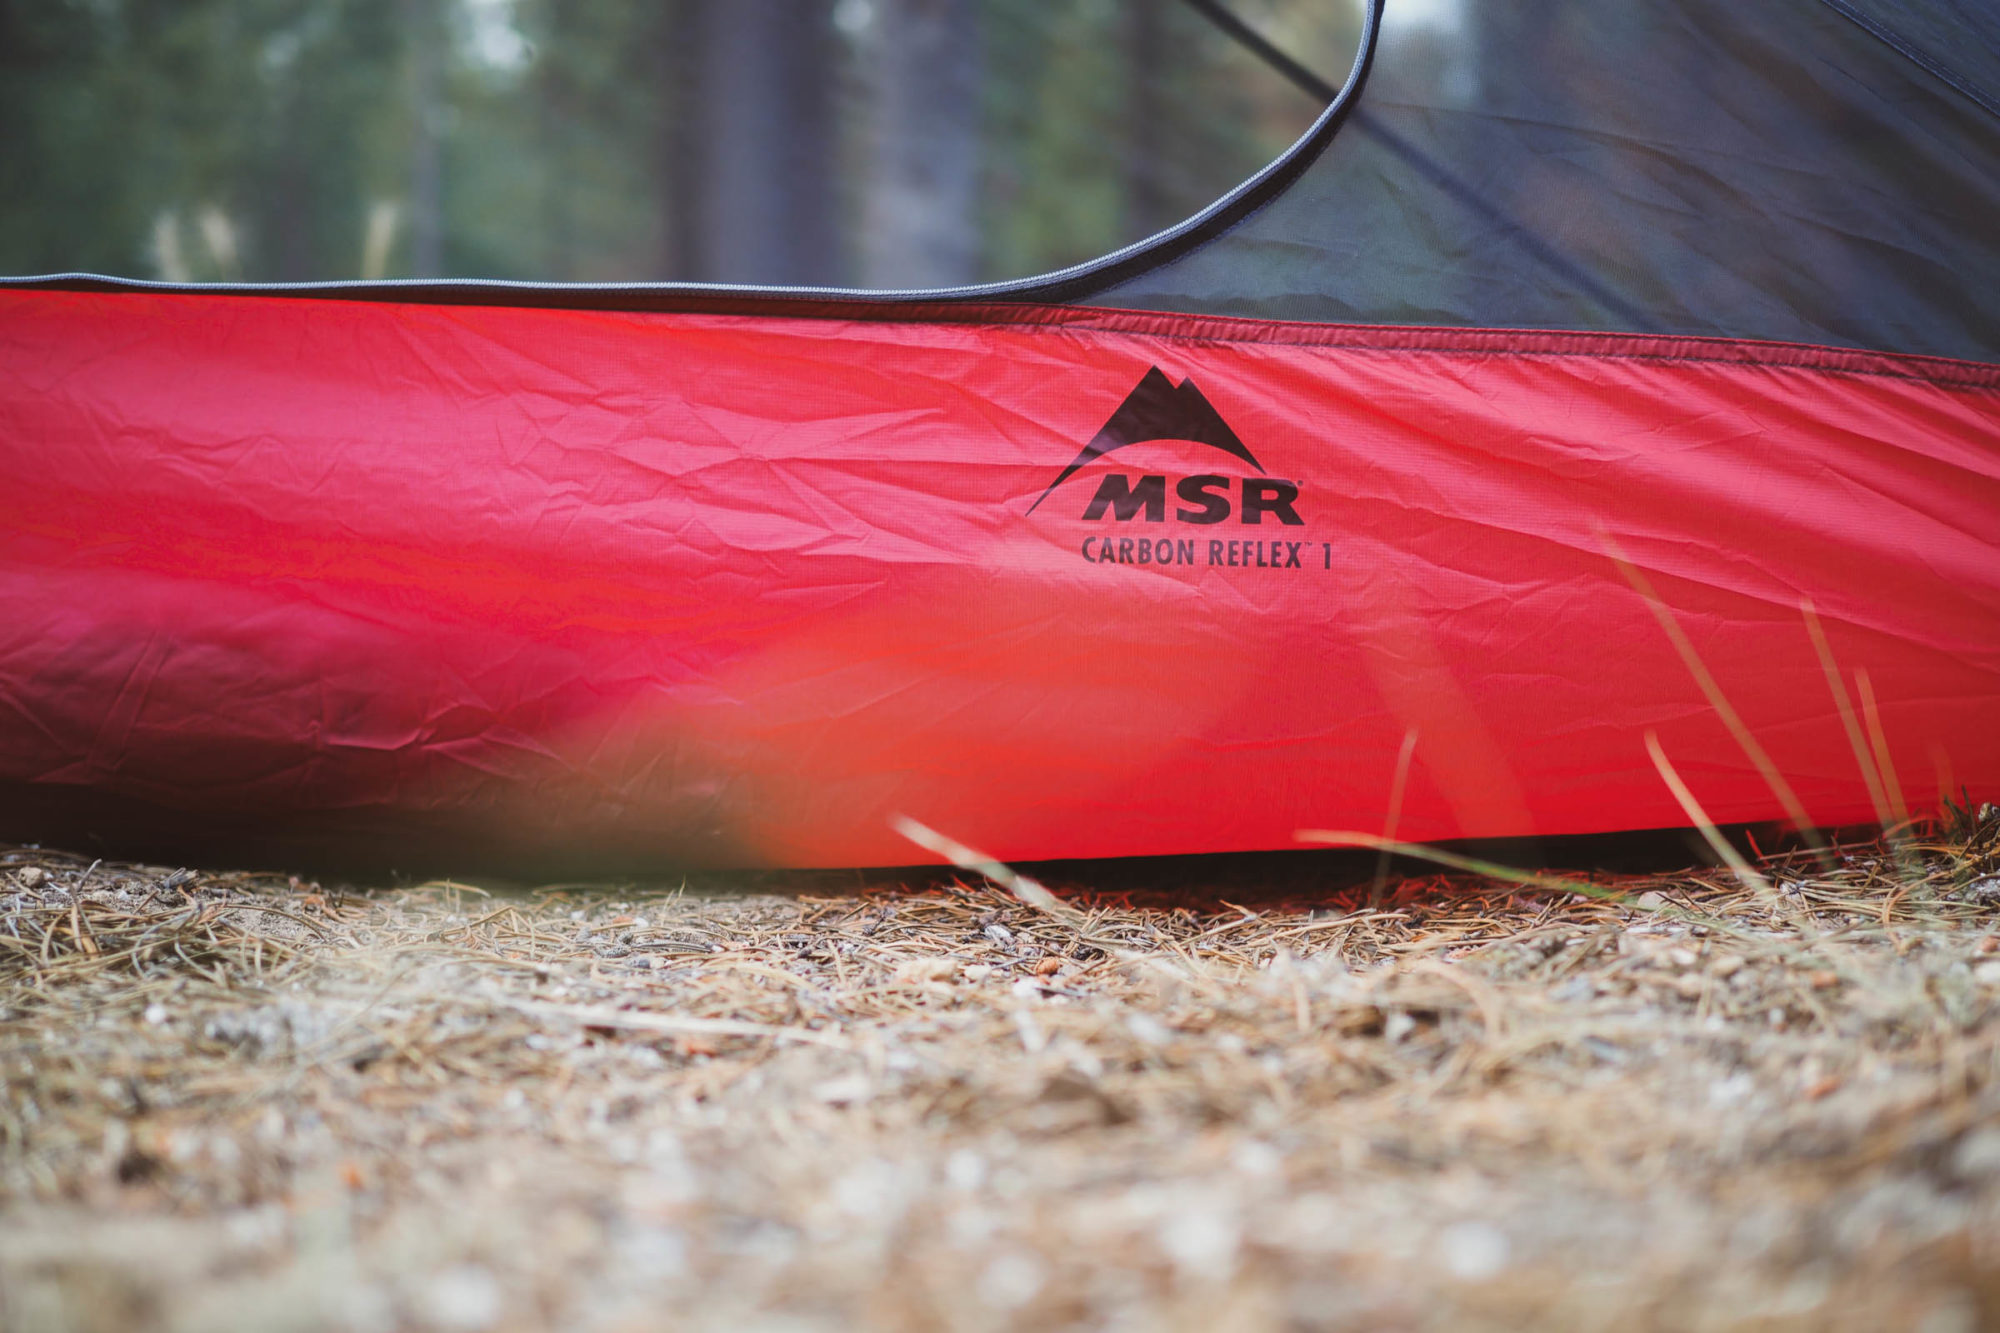 MSR Carbon Reflex 1 Tent Review